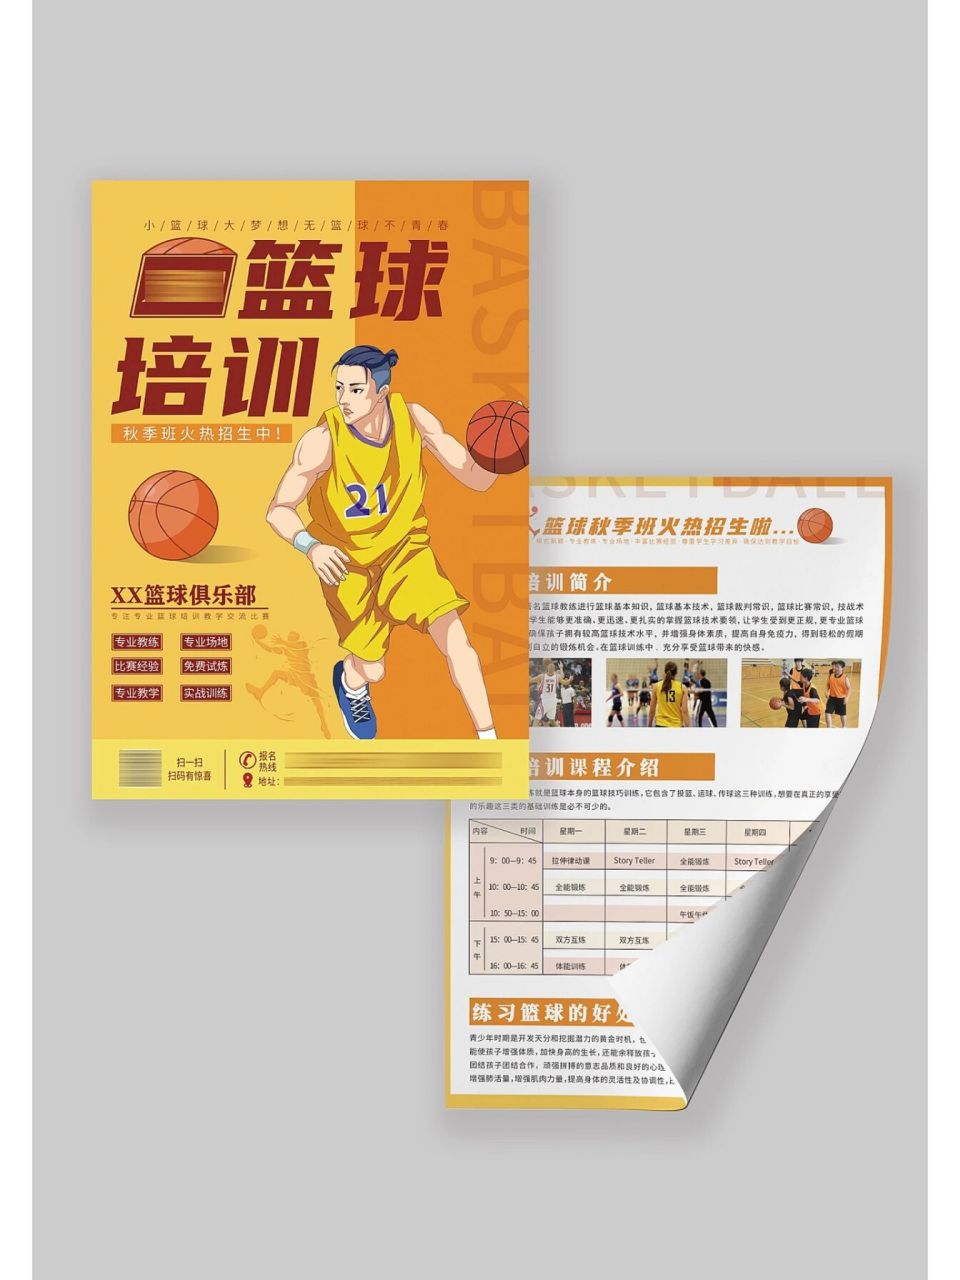 篮球培训班宣传单 这是一期篮球培训班宣传单设计 正面为篮球动漫形象